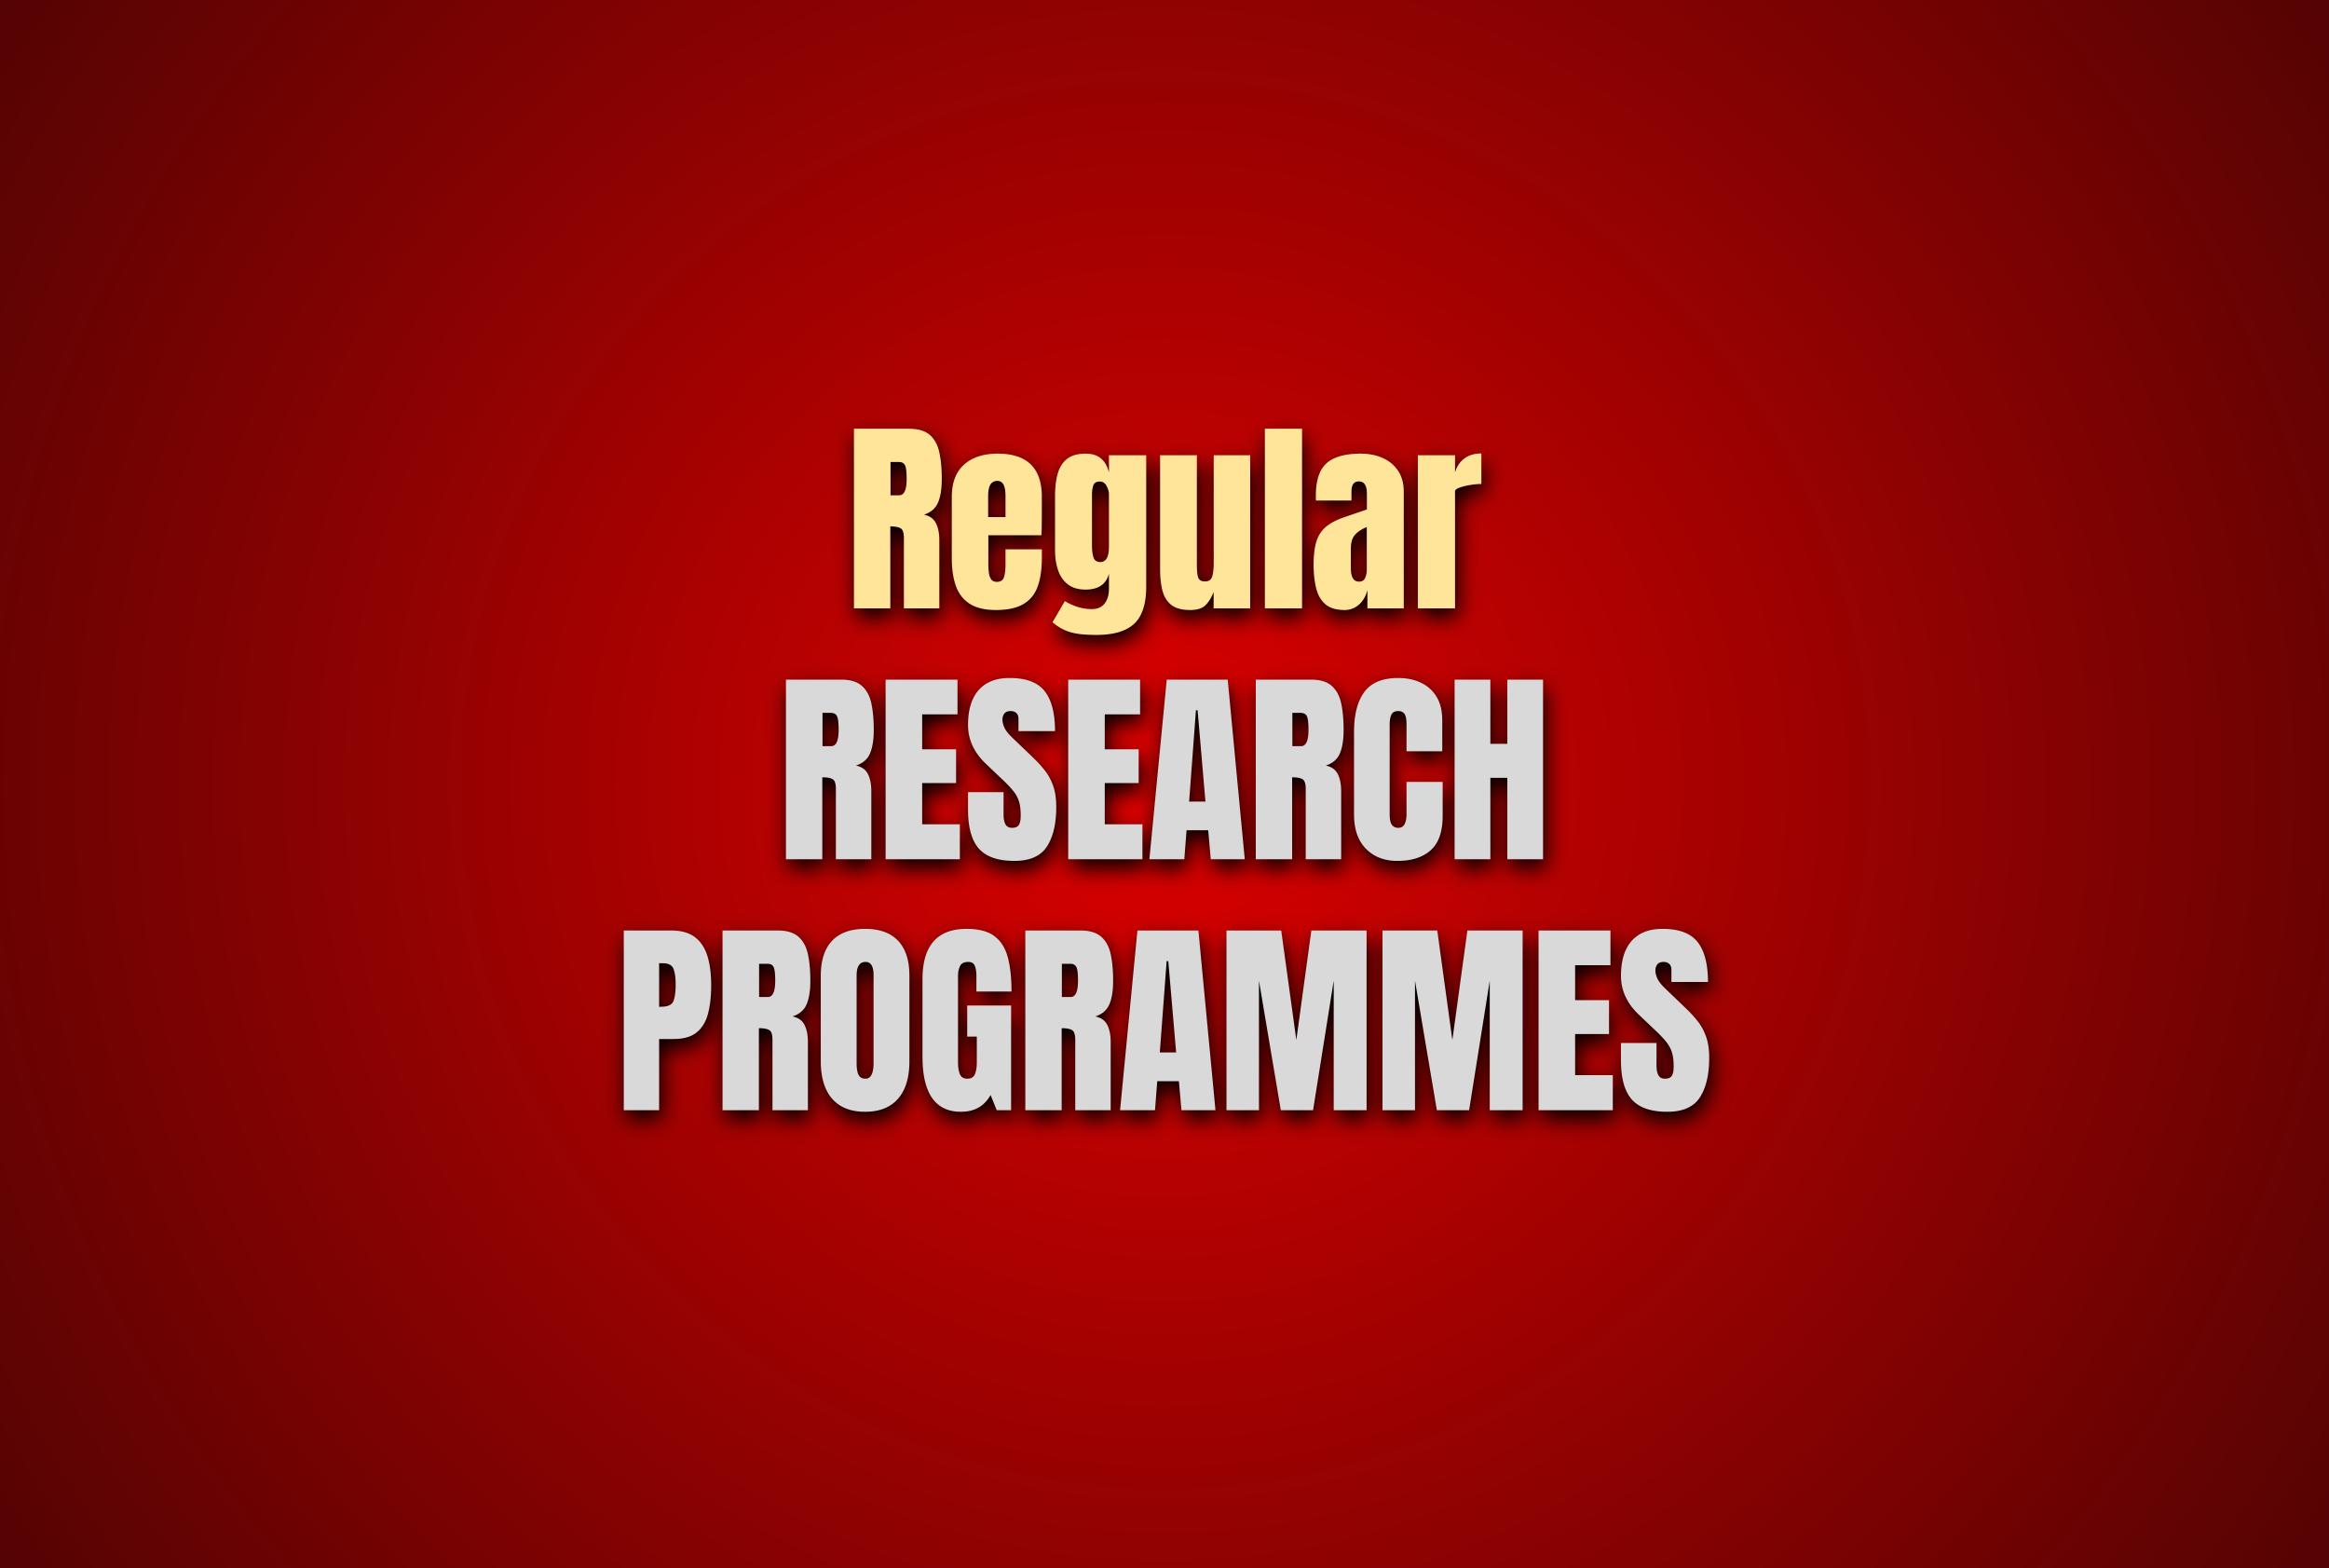 BioLim Regular Research Programmes